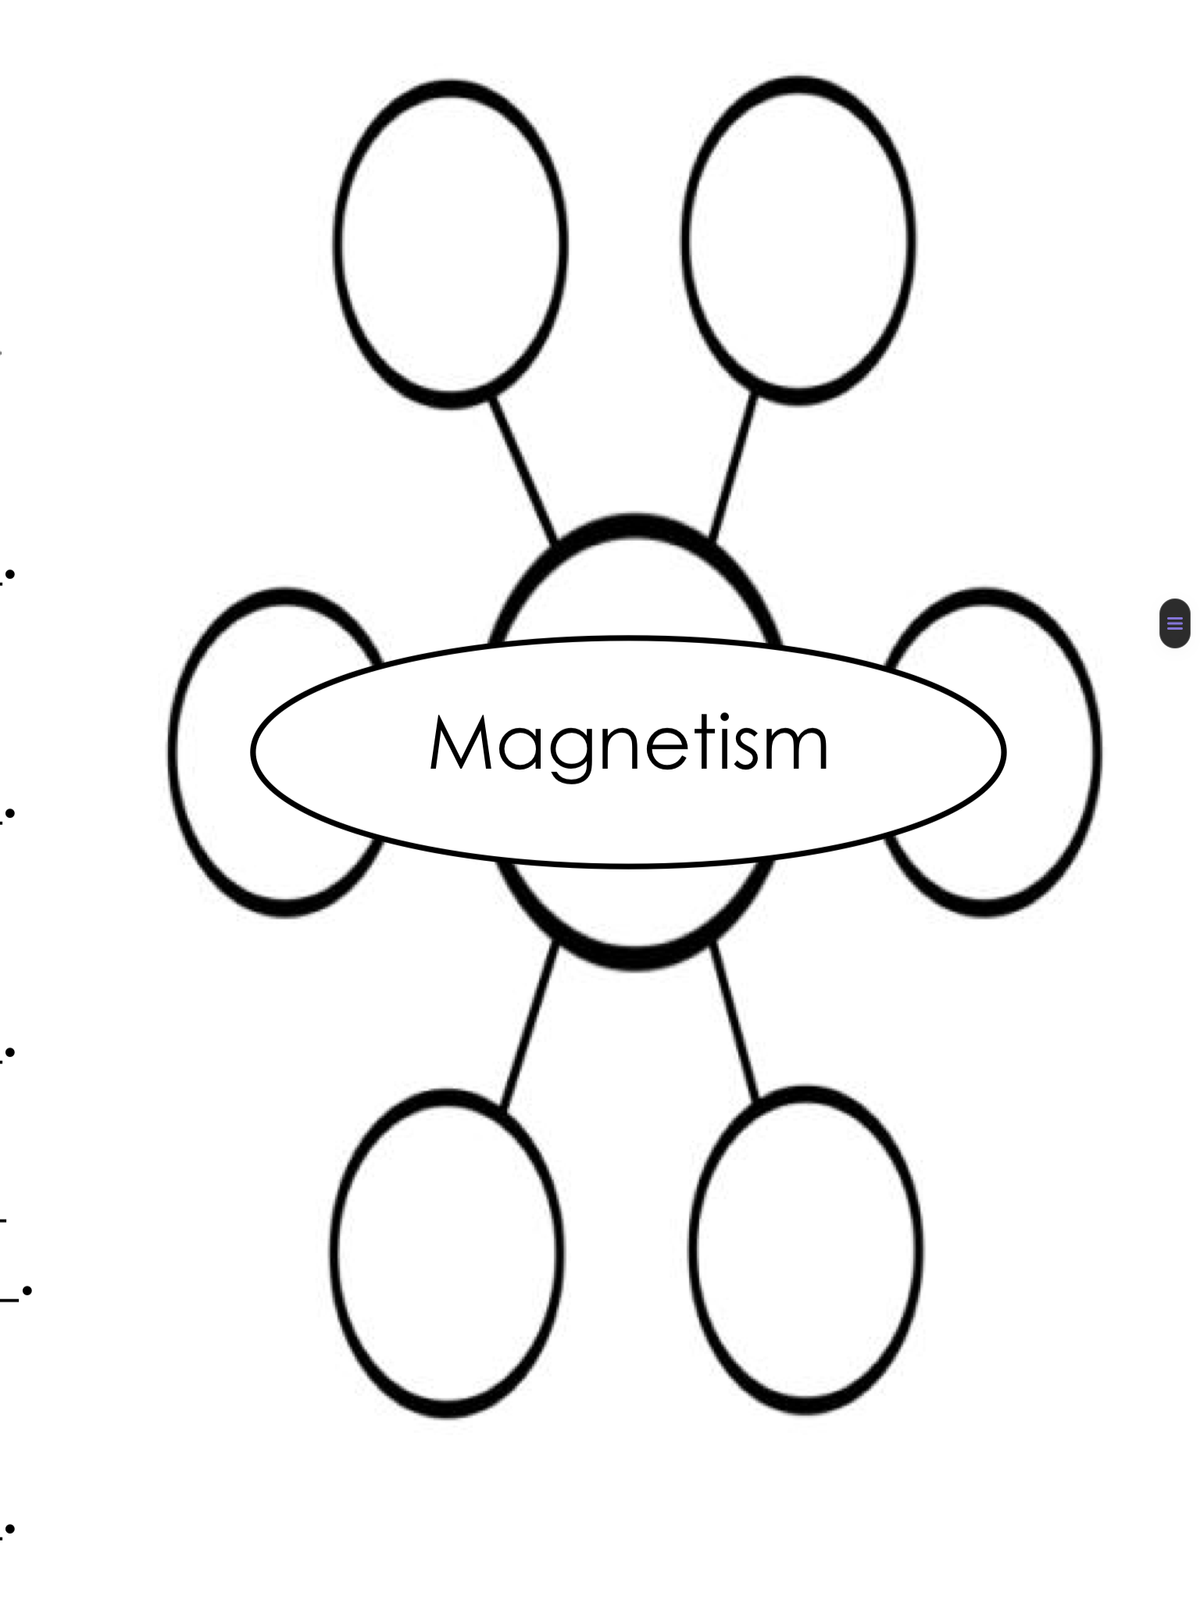 Magnetism
